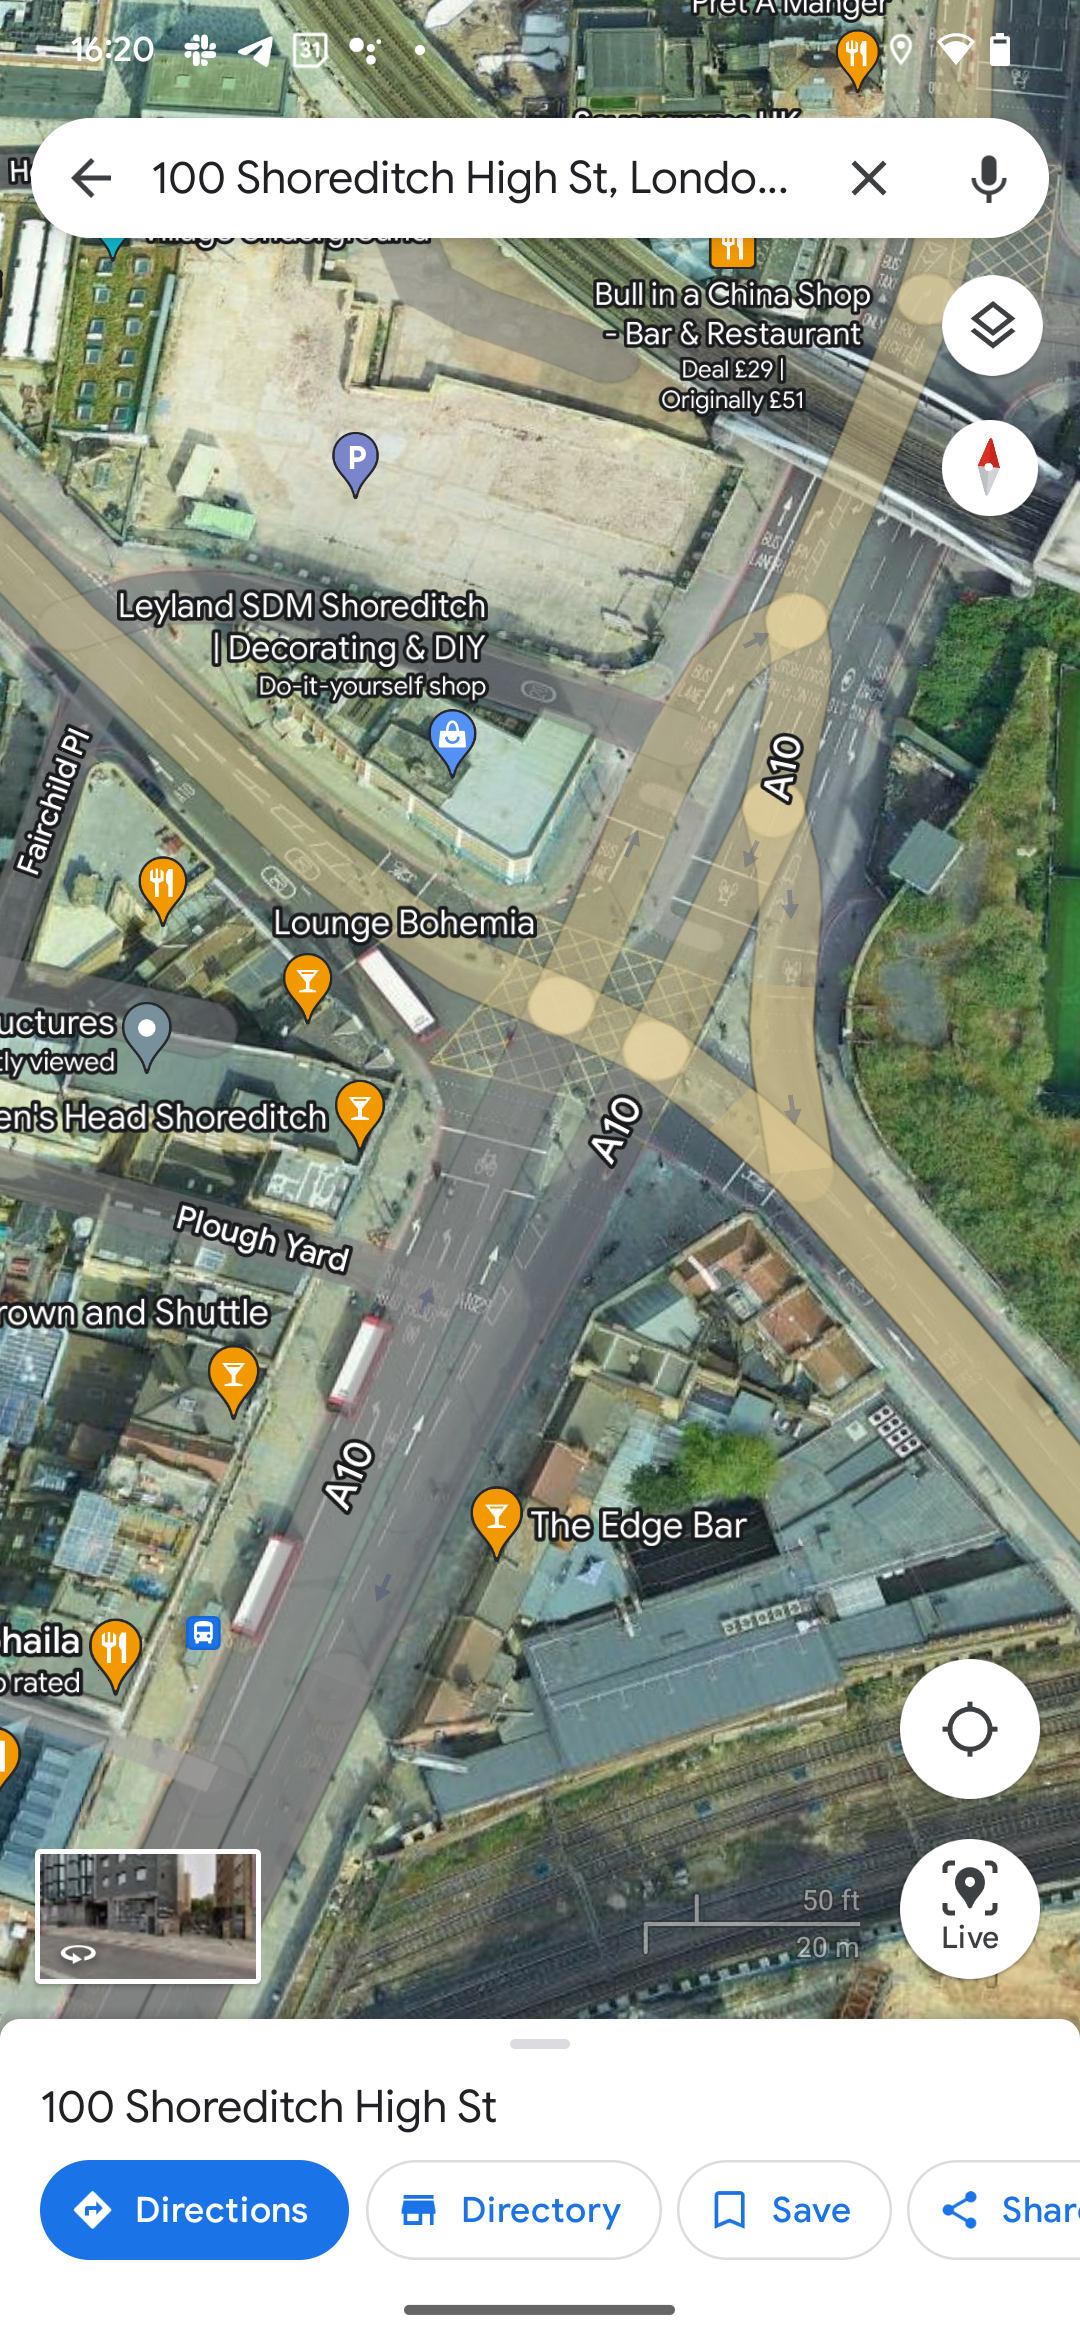 Tampilan satelit Google Maps hanya menampilkan persimpangan jalan di London dari atas ke bawah